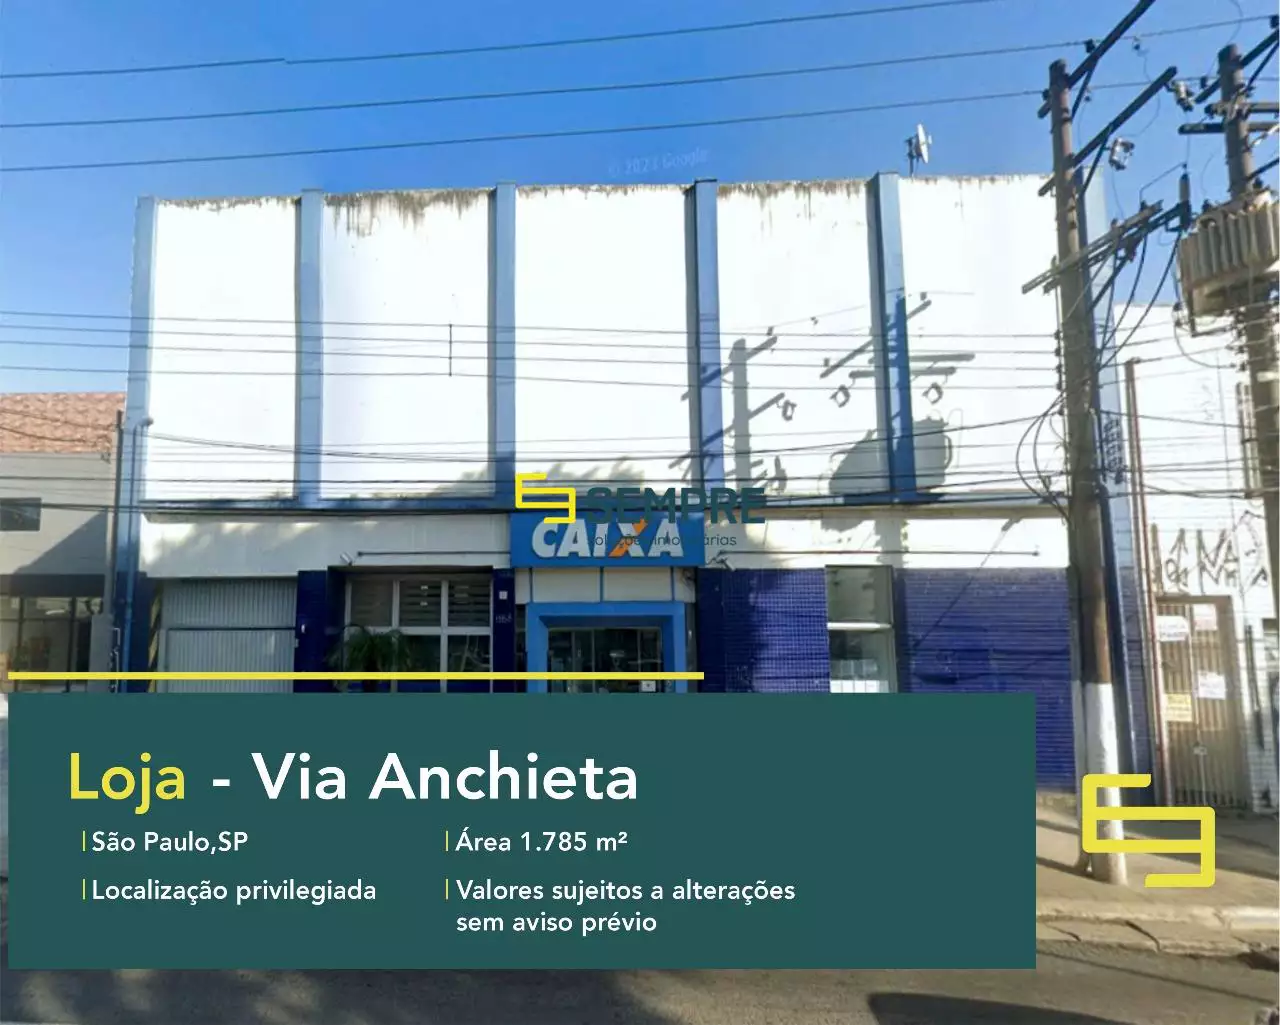 Loja à venda na Via Anchieta em São Paulo, excelente localização. O estabelecimento comercial conta com área de 1.785 m².